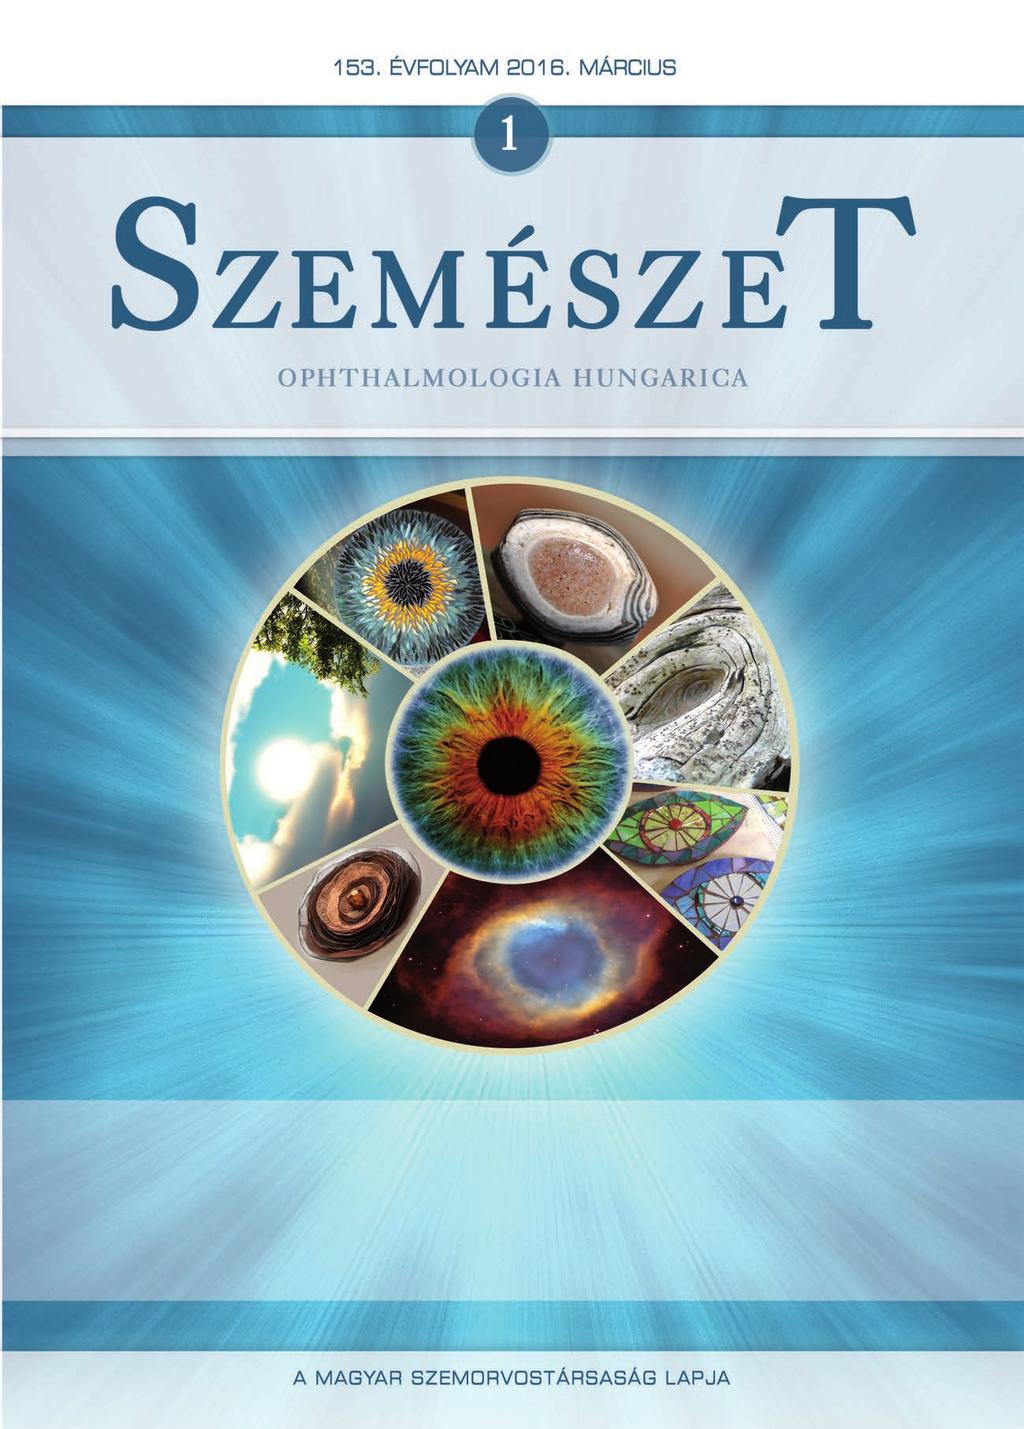 Transzplantációtól az onkológiáig: beszámoló a Klinikai Konferencia 2. napjáról – Semmelweis Hírek